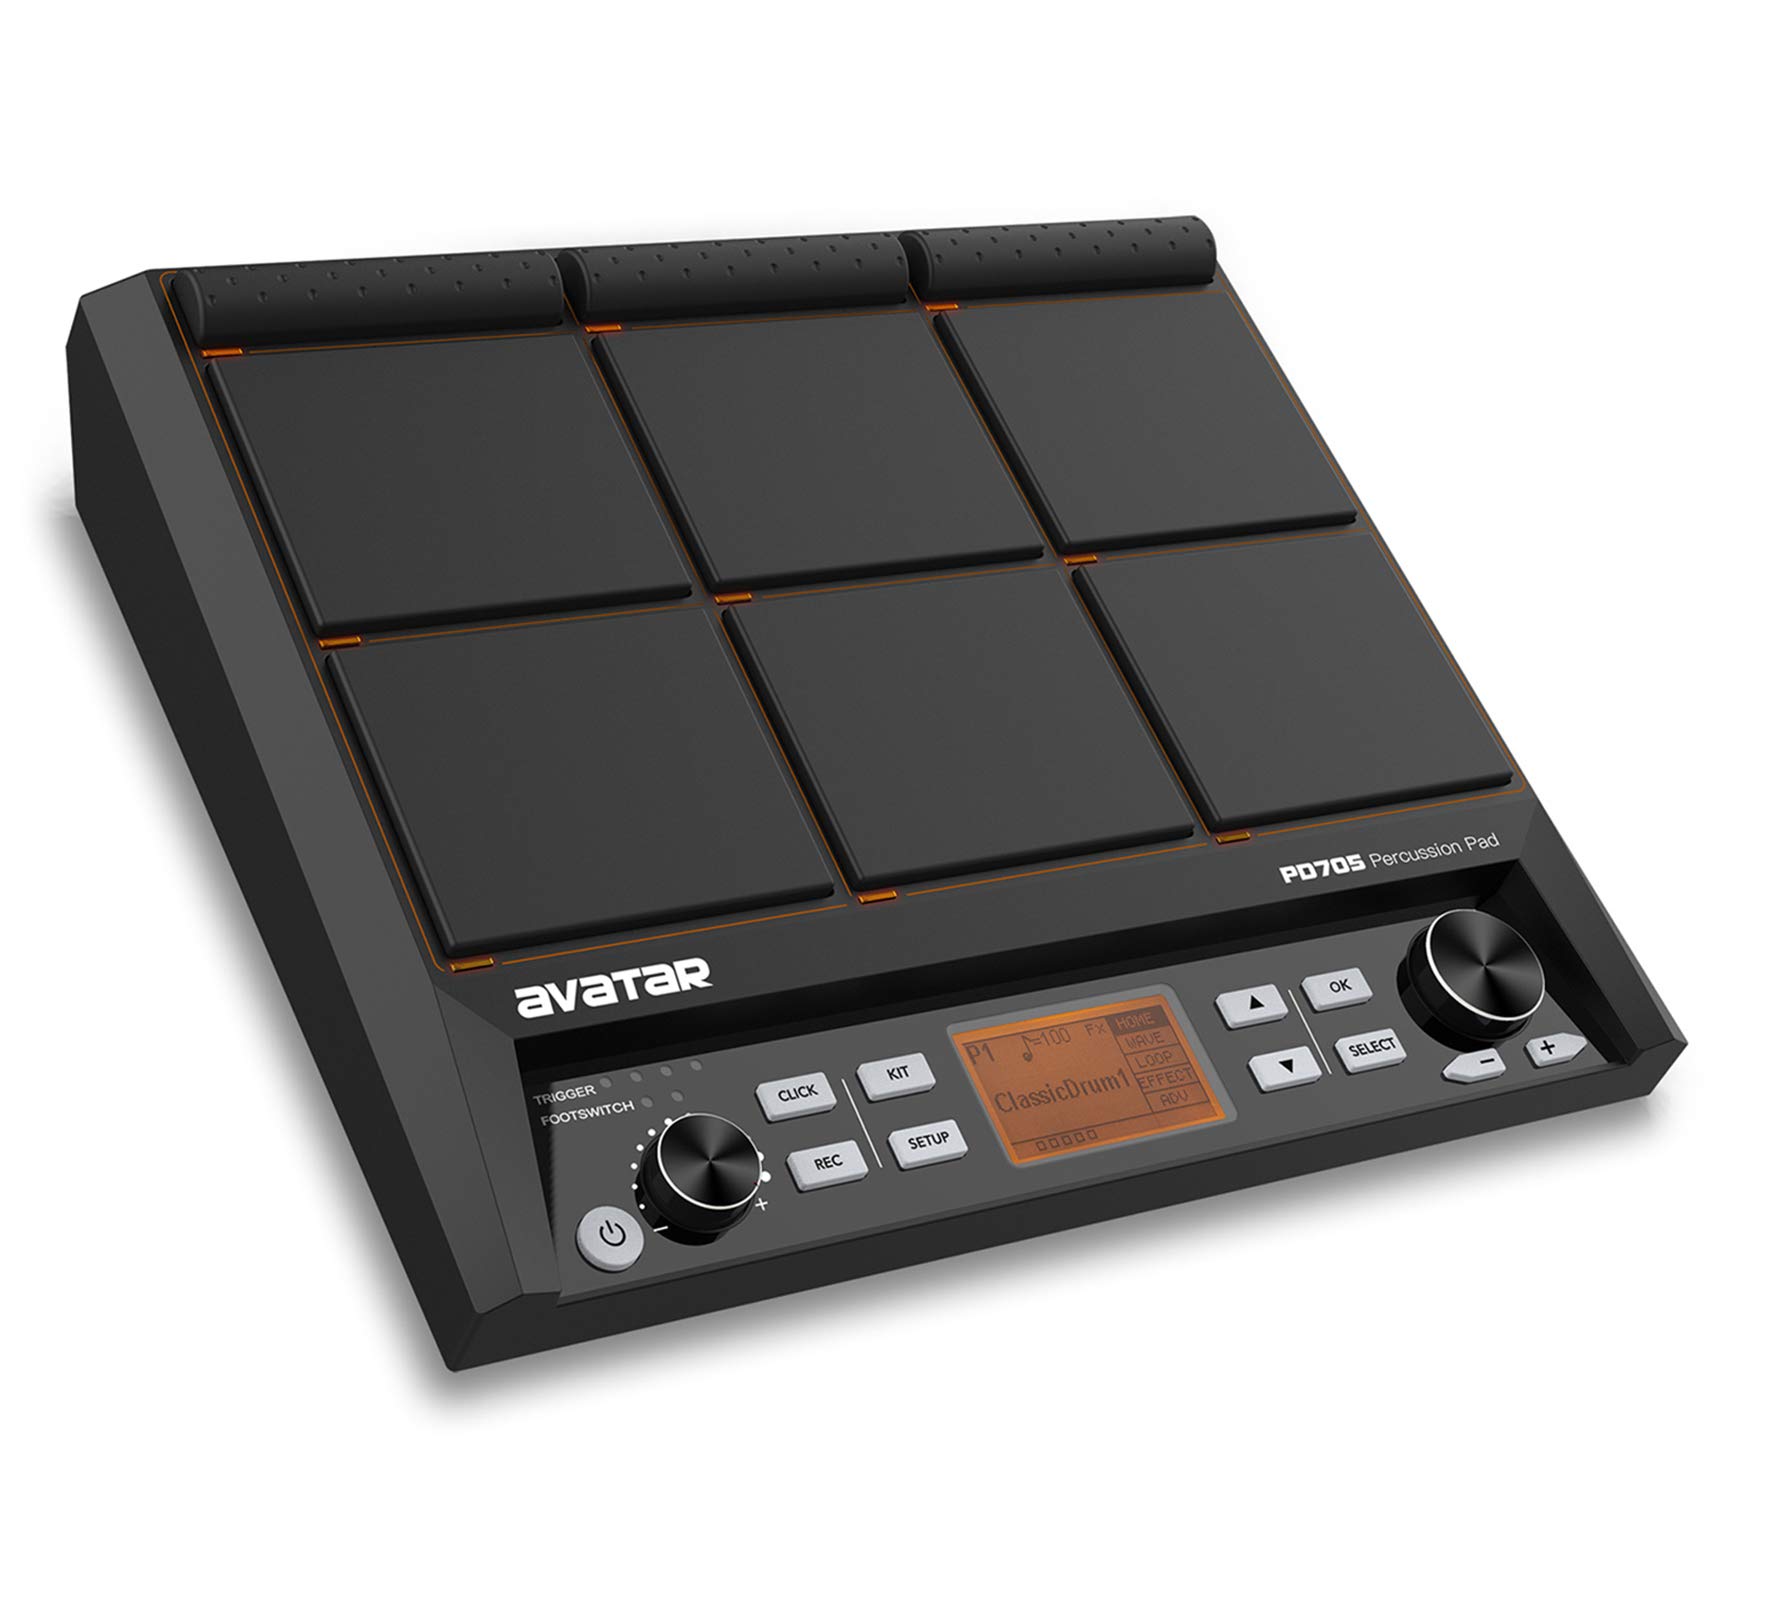 Với HXW PD705 percussion pad, các bạn sẽ không còn phải đối mặt với các chi phí đắt đỏ khi sáng tác Âm nhạc của mình. Với khả năng phát ra những âm thanh chất lượng cao, sản phẩm này sẽ mang đến cho từng người một trải nghiệm âm nhạc độc đáo.